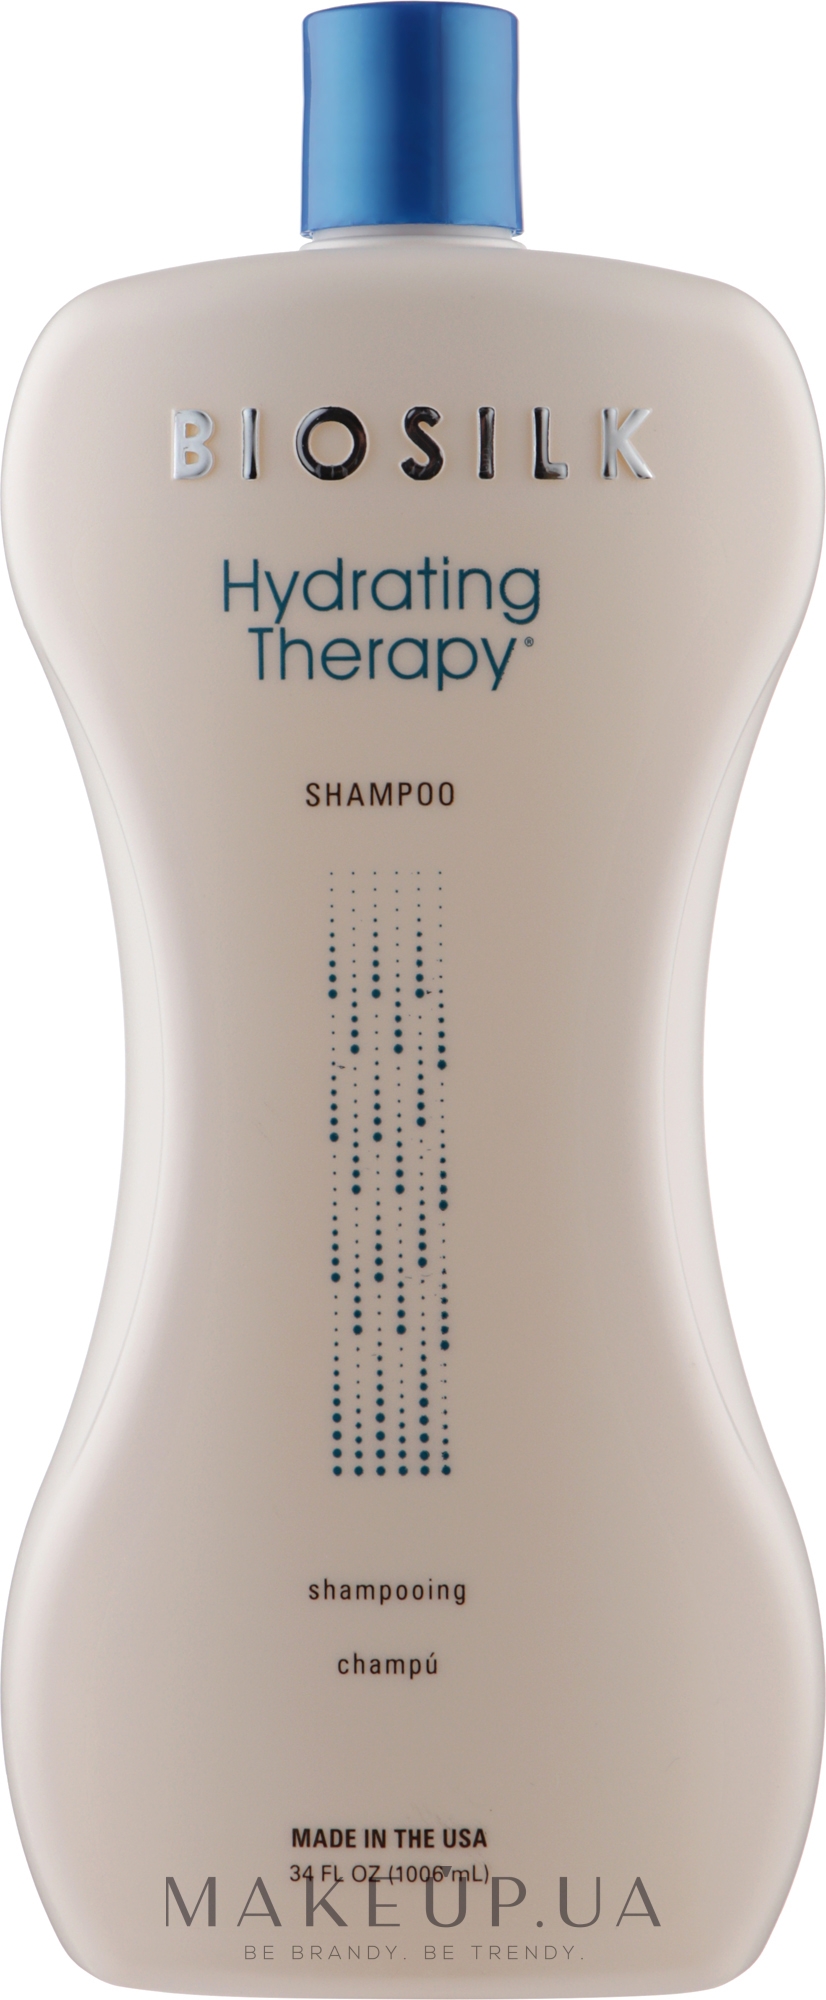 Шампунь для глибокого зволоження волосся - BioSilk Hydrating Therapy Shampoo — фото 1006ml